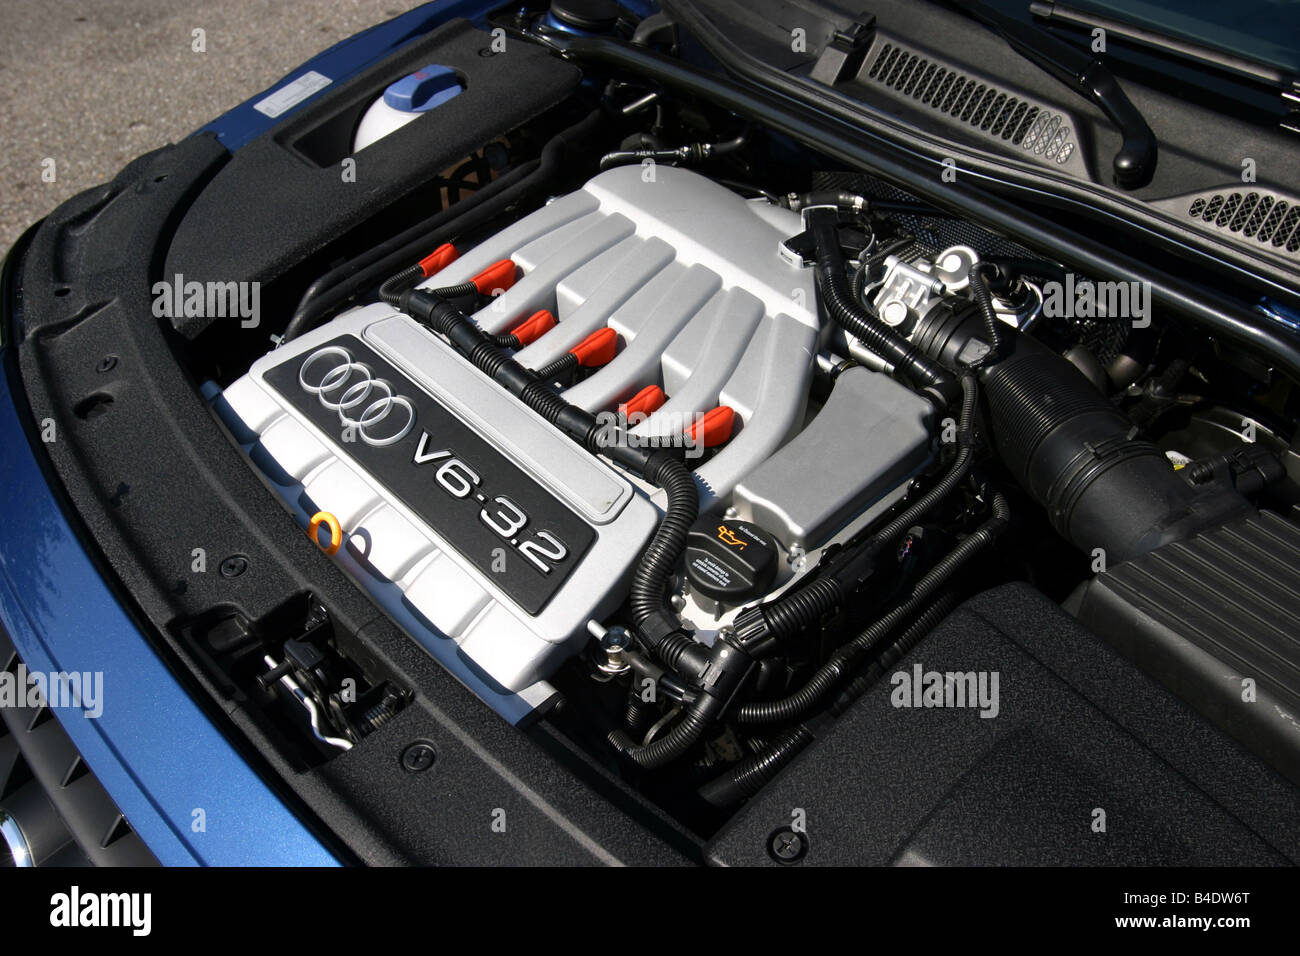 Auto, Audi TT 3.2, Coupe, Roadster, Baujahr 2003-blau, im Motorraum, Motor,  Technik/Zubehör, Zubehör anzeigen Stockfotografie - Alamy